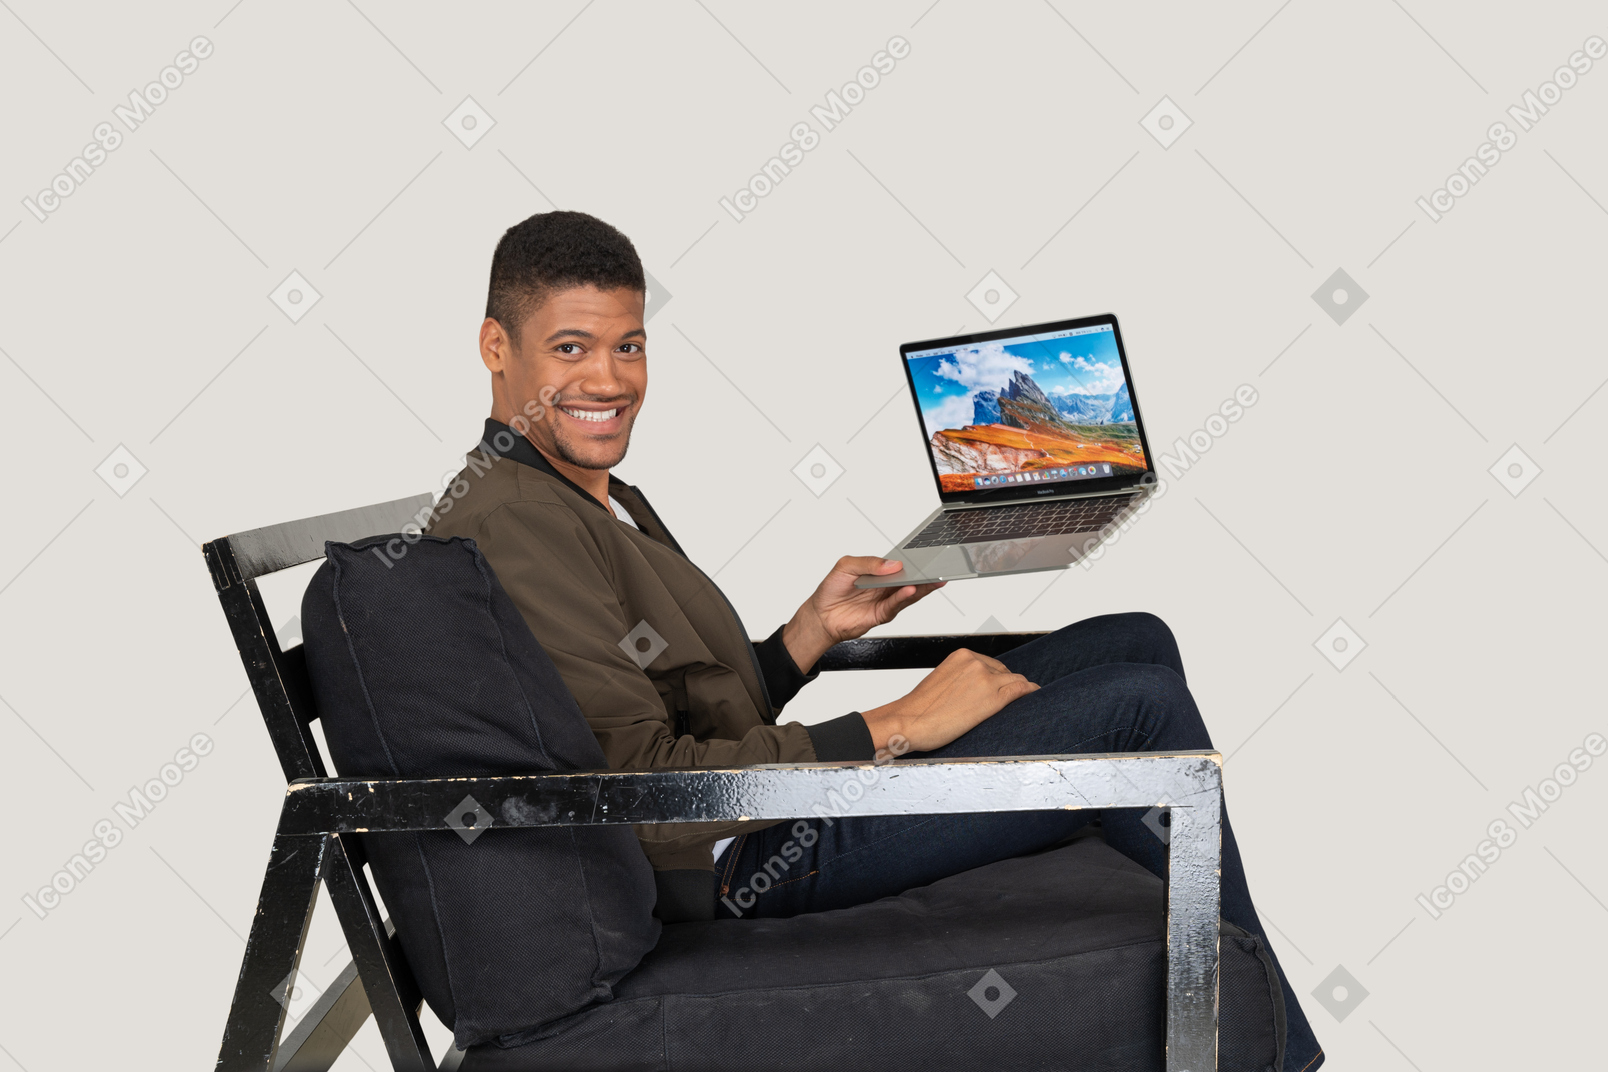 Vista lateral de um jovem sentado em um sofá segurando um laptop